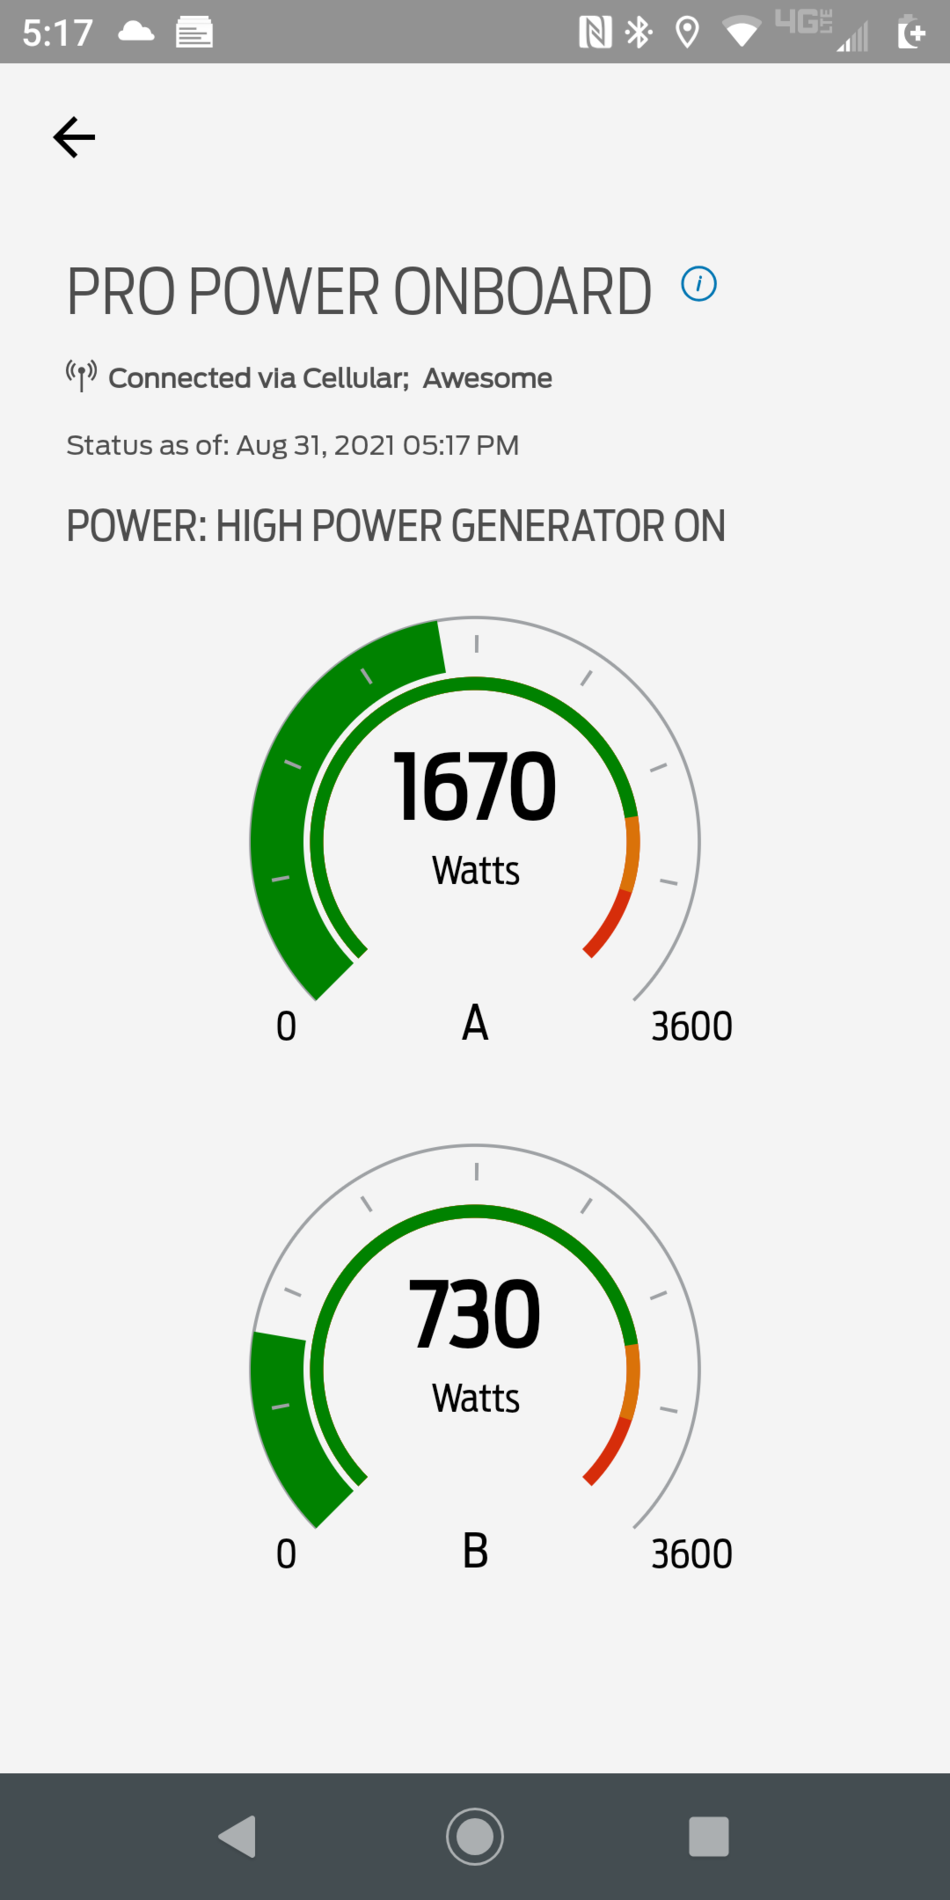 Ford F-150 Lightning Running generator all night? Safe? Gas consumption? Screenshot_20210831-171725